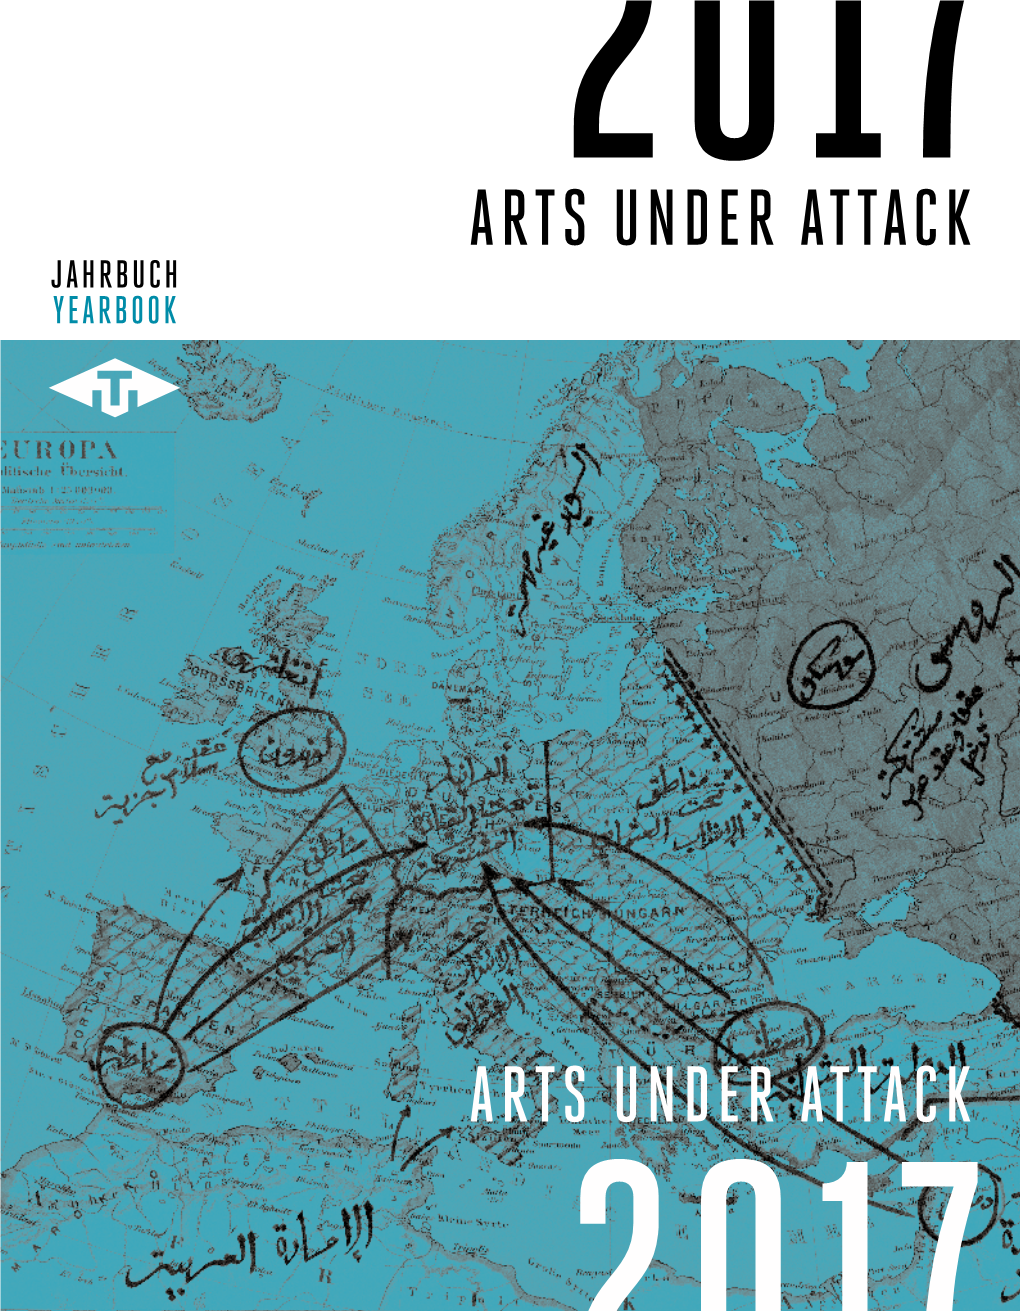 Arts Under Attack Jahrbuch Jahrbuch Yearbook Yearbook 2017 2017 Jahrbuch Yearbook